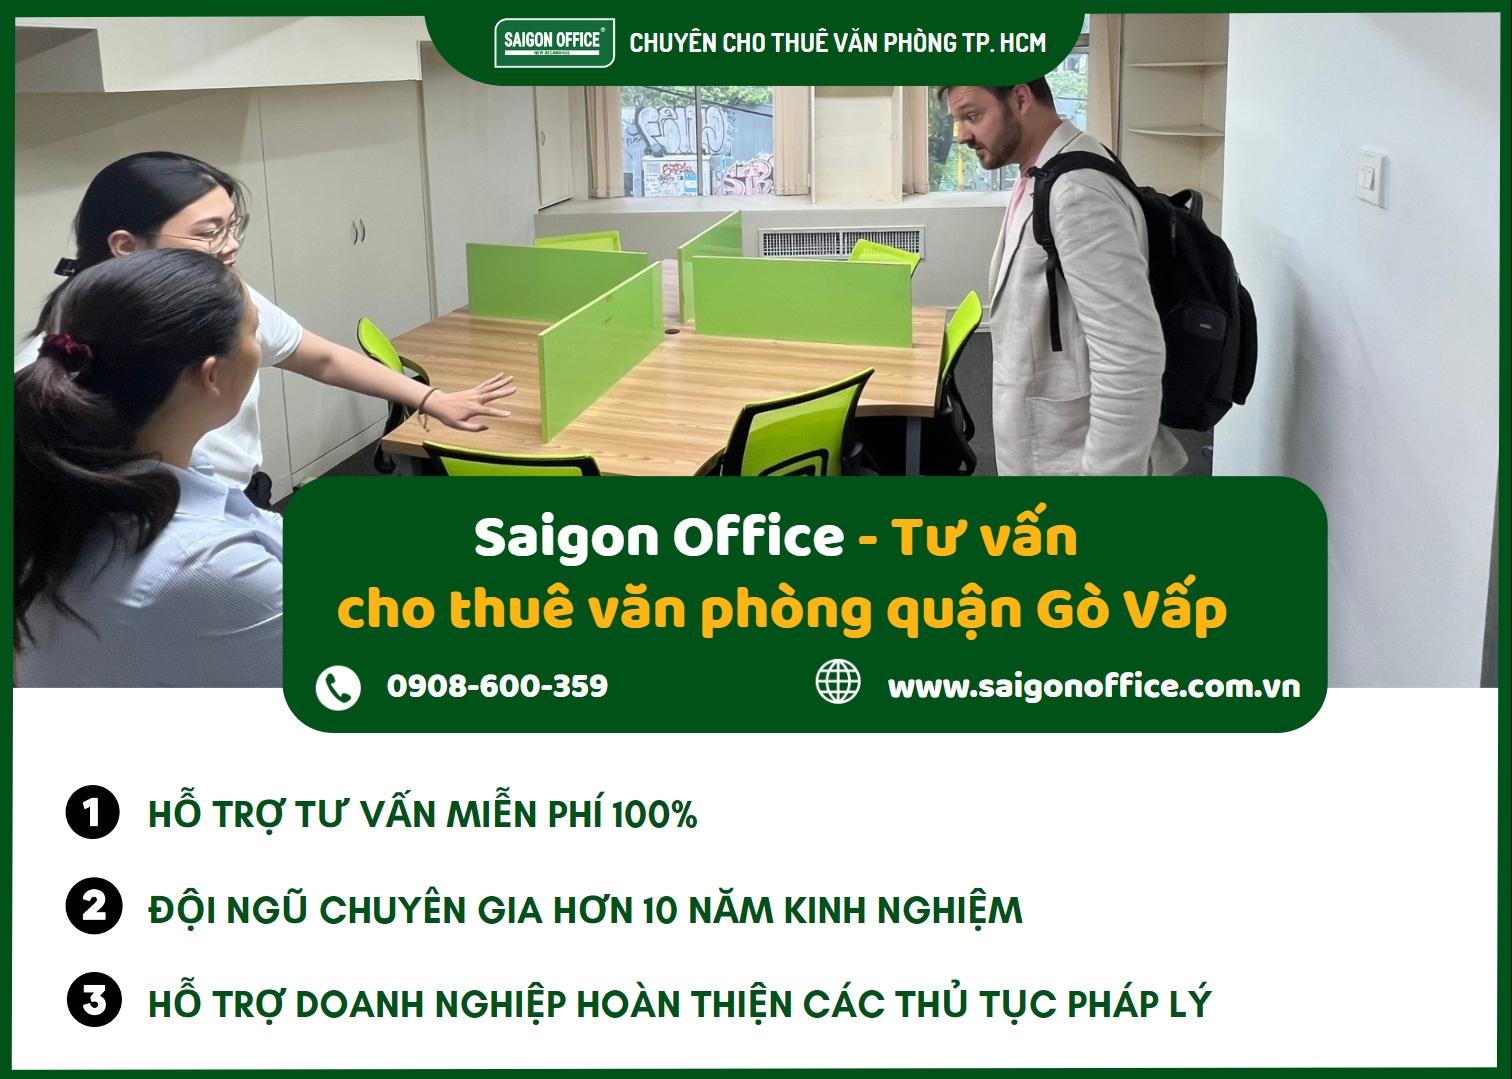 Saigon Office – đơn vị tư vấn cho thuê văn phòng hàng đầu TPHCM